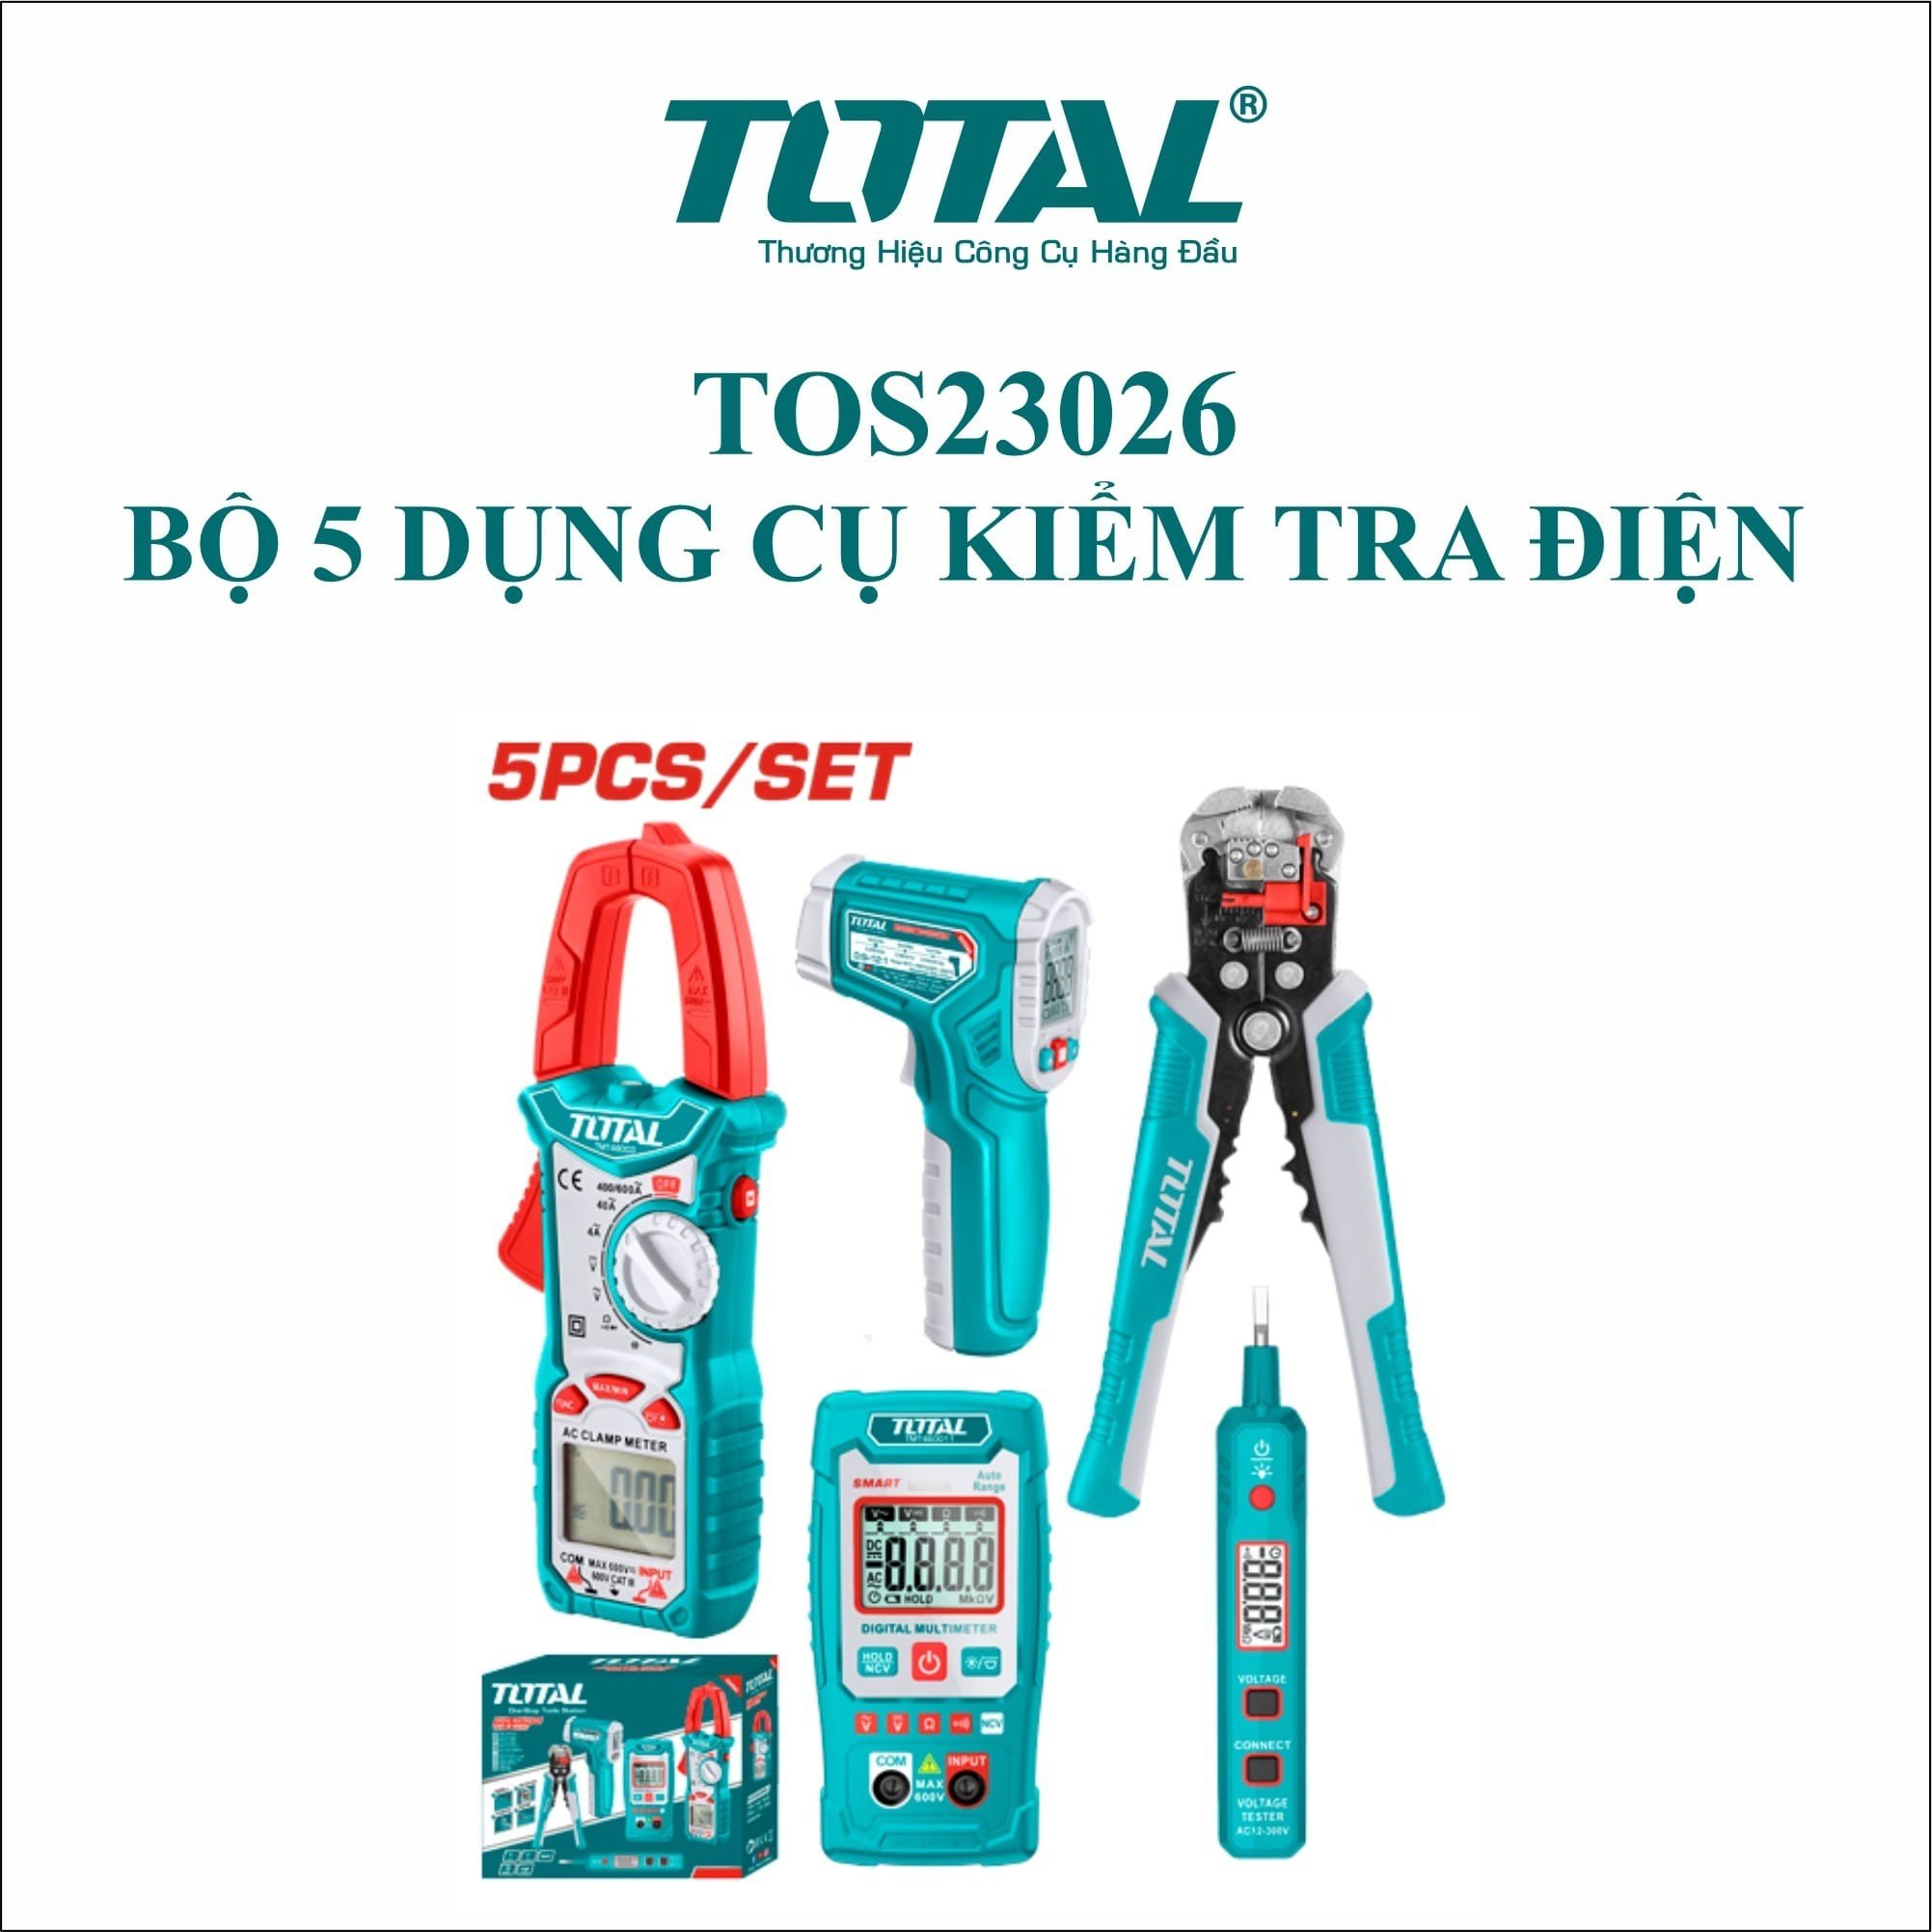 Bộ 5 dụng cụ kiểm tra điện TOTAL TOS23026